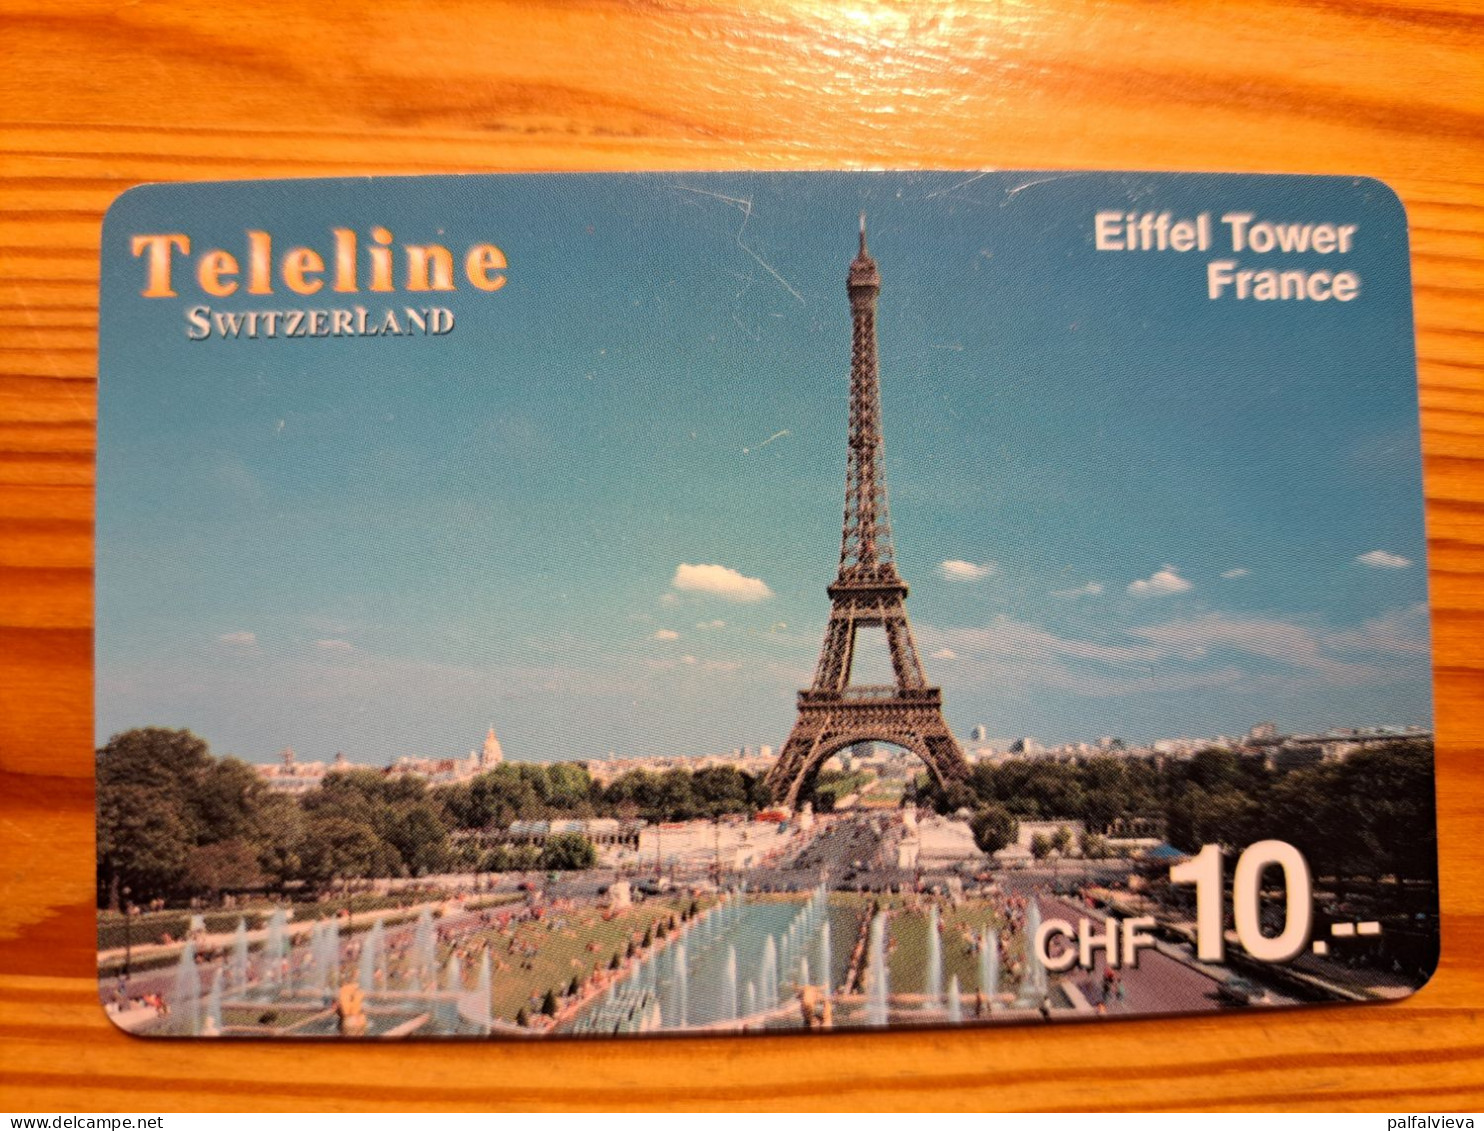 Prepaid Phonecard Switzerland, Teleline - France, Paris, Eiffel Tower - Switzerland